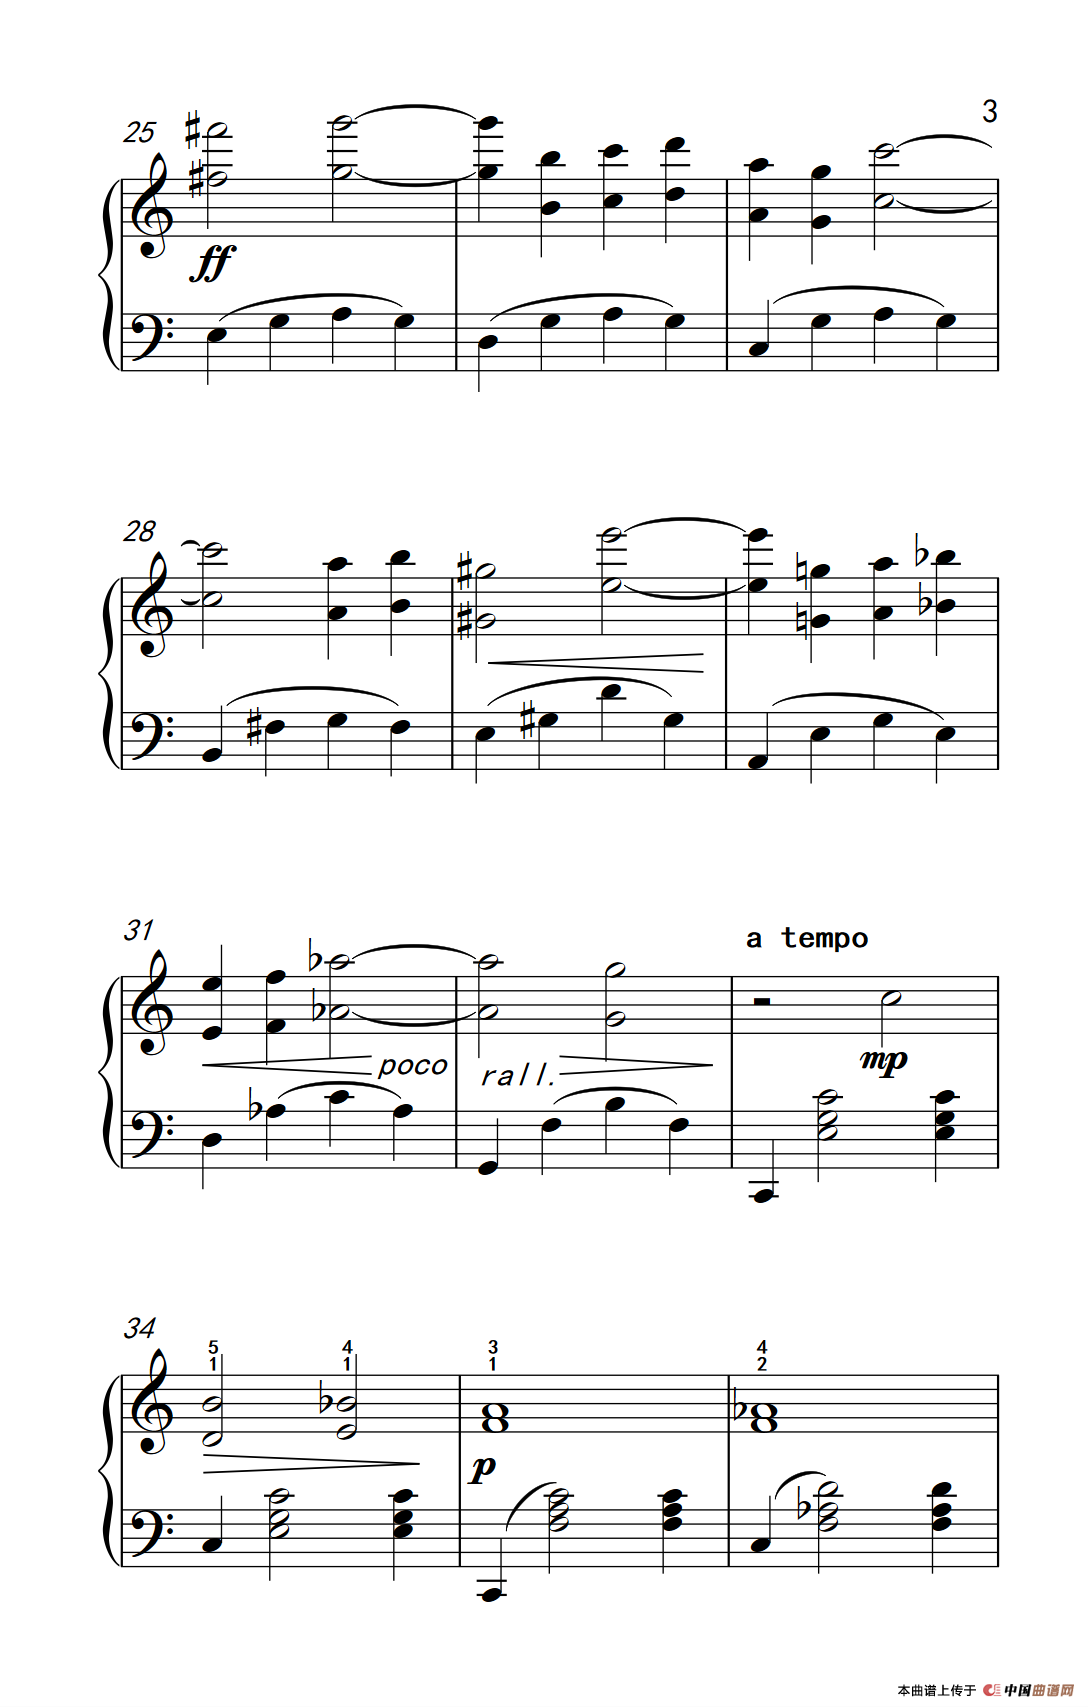 《罗密欧与朱丽叶 序曲》钢琴曲谱图分享